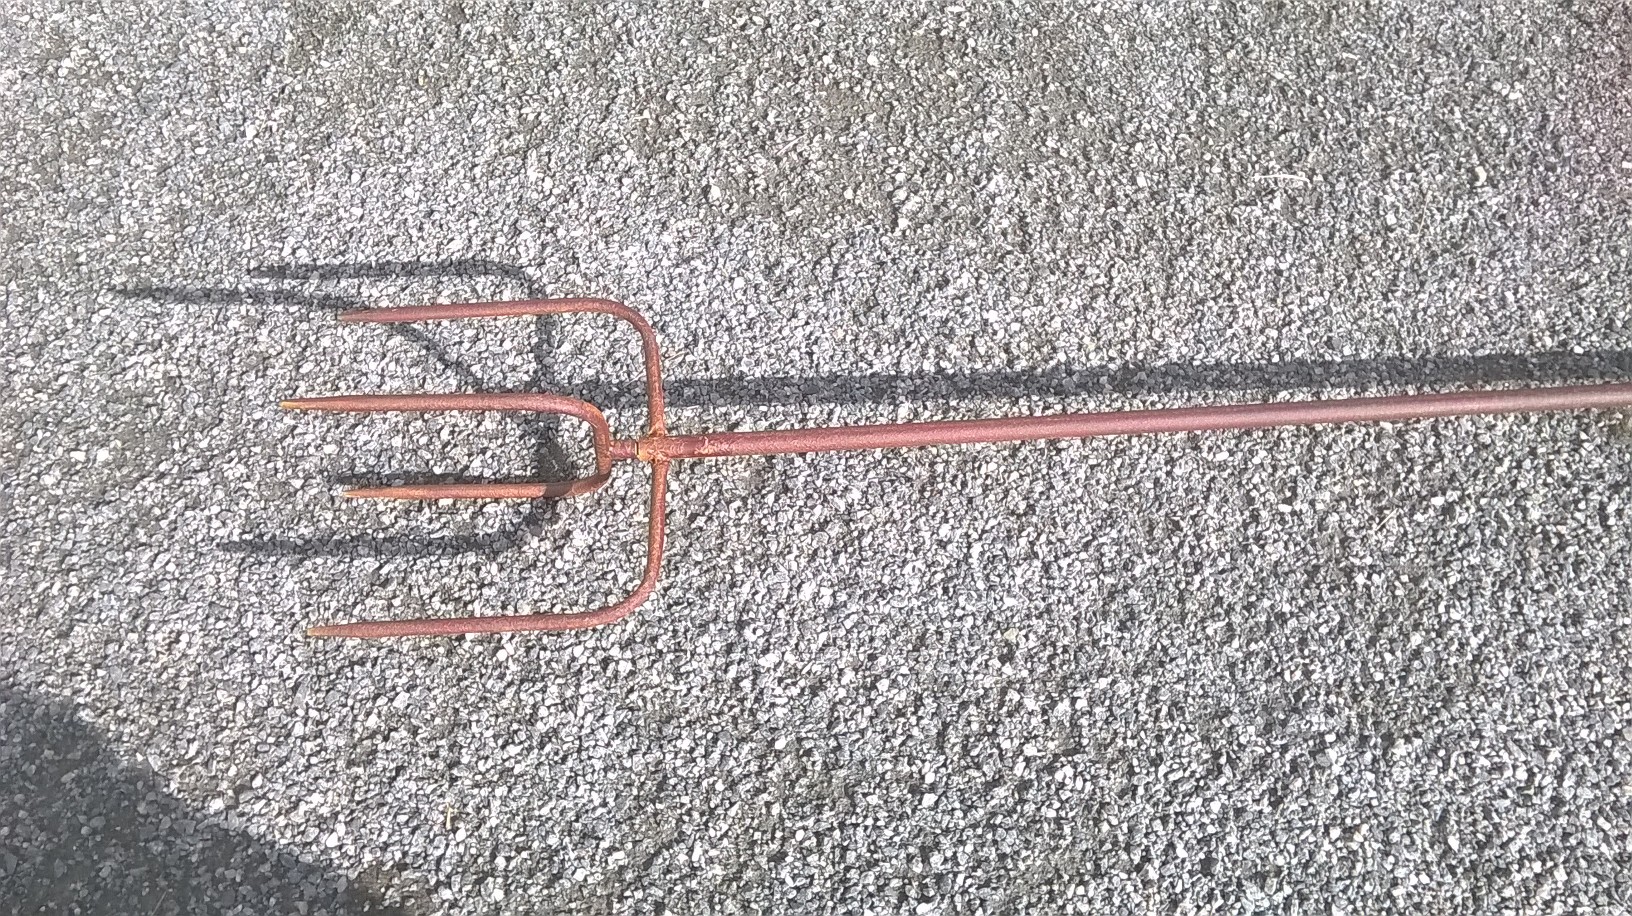 Wippe Windspiel Eule mit Schwingflügel Gartenpendel Metallwippe H 158 cm